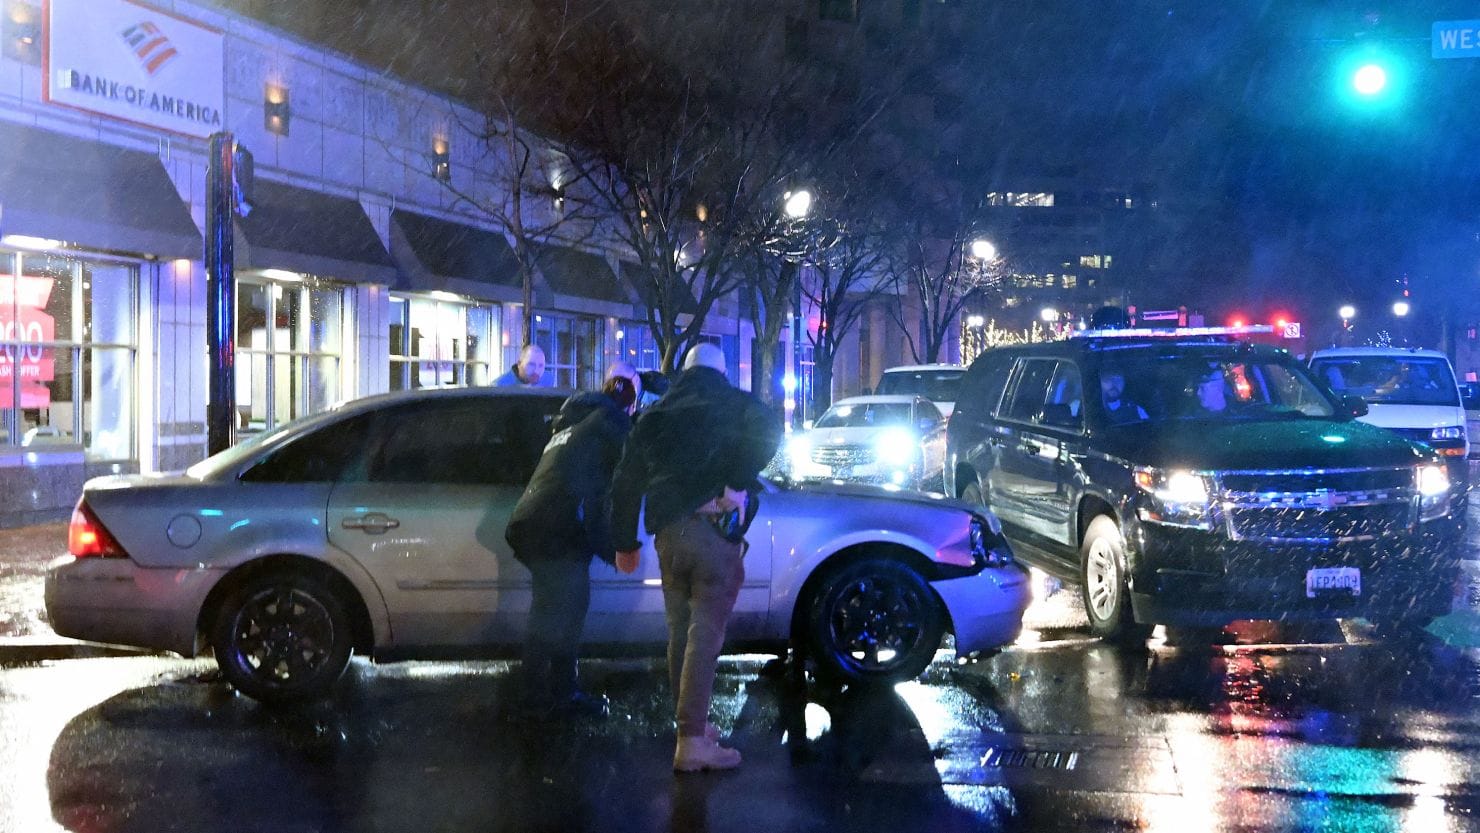 President Biden Unharmed in Motorcade Incident in Wilmington